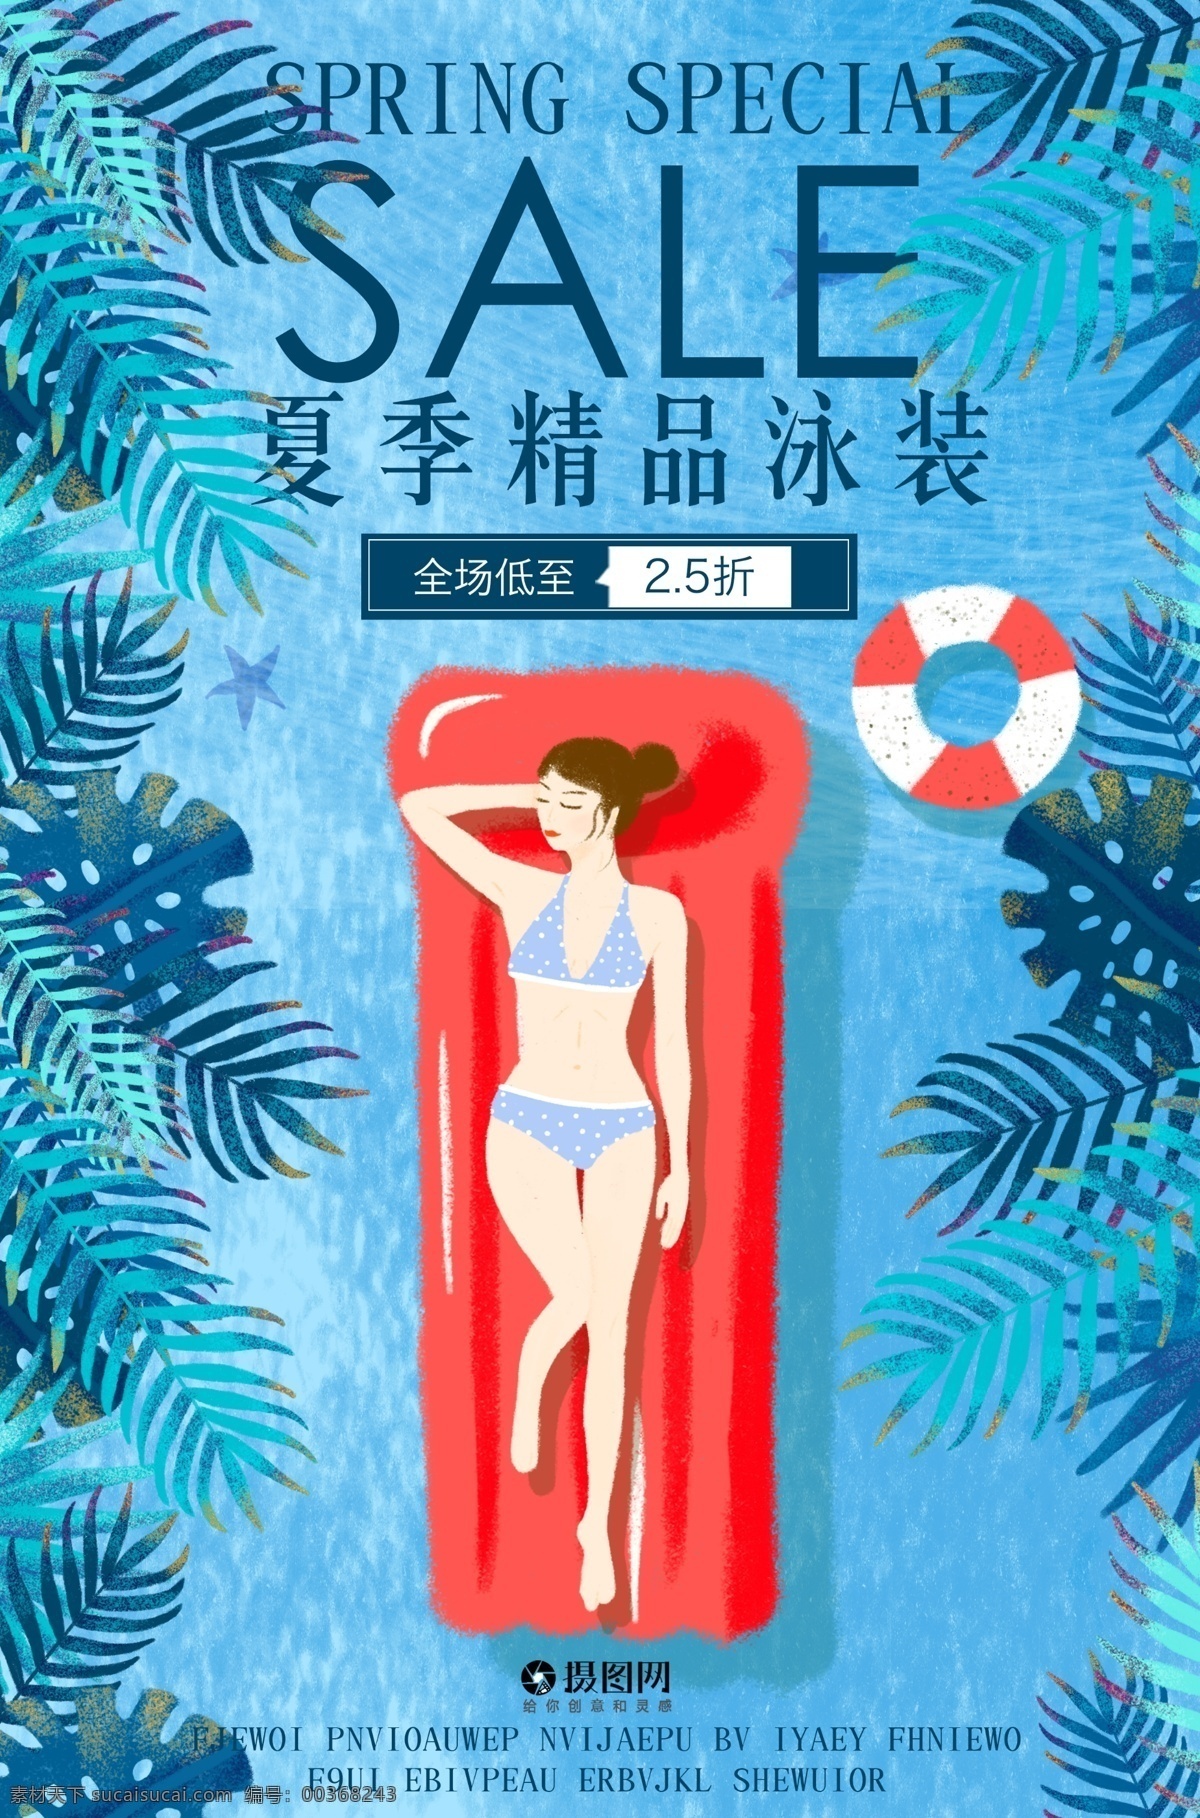 夏季 泳装 促销 海报 夏日 游泳 比基尼 游泳衣 蓝色 游泳池 泳衣 促销海报